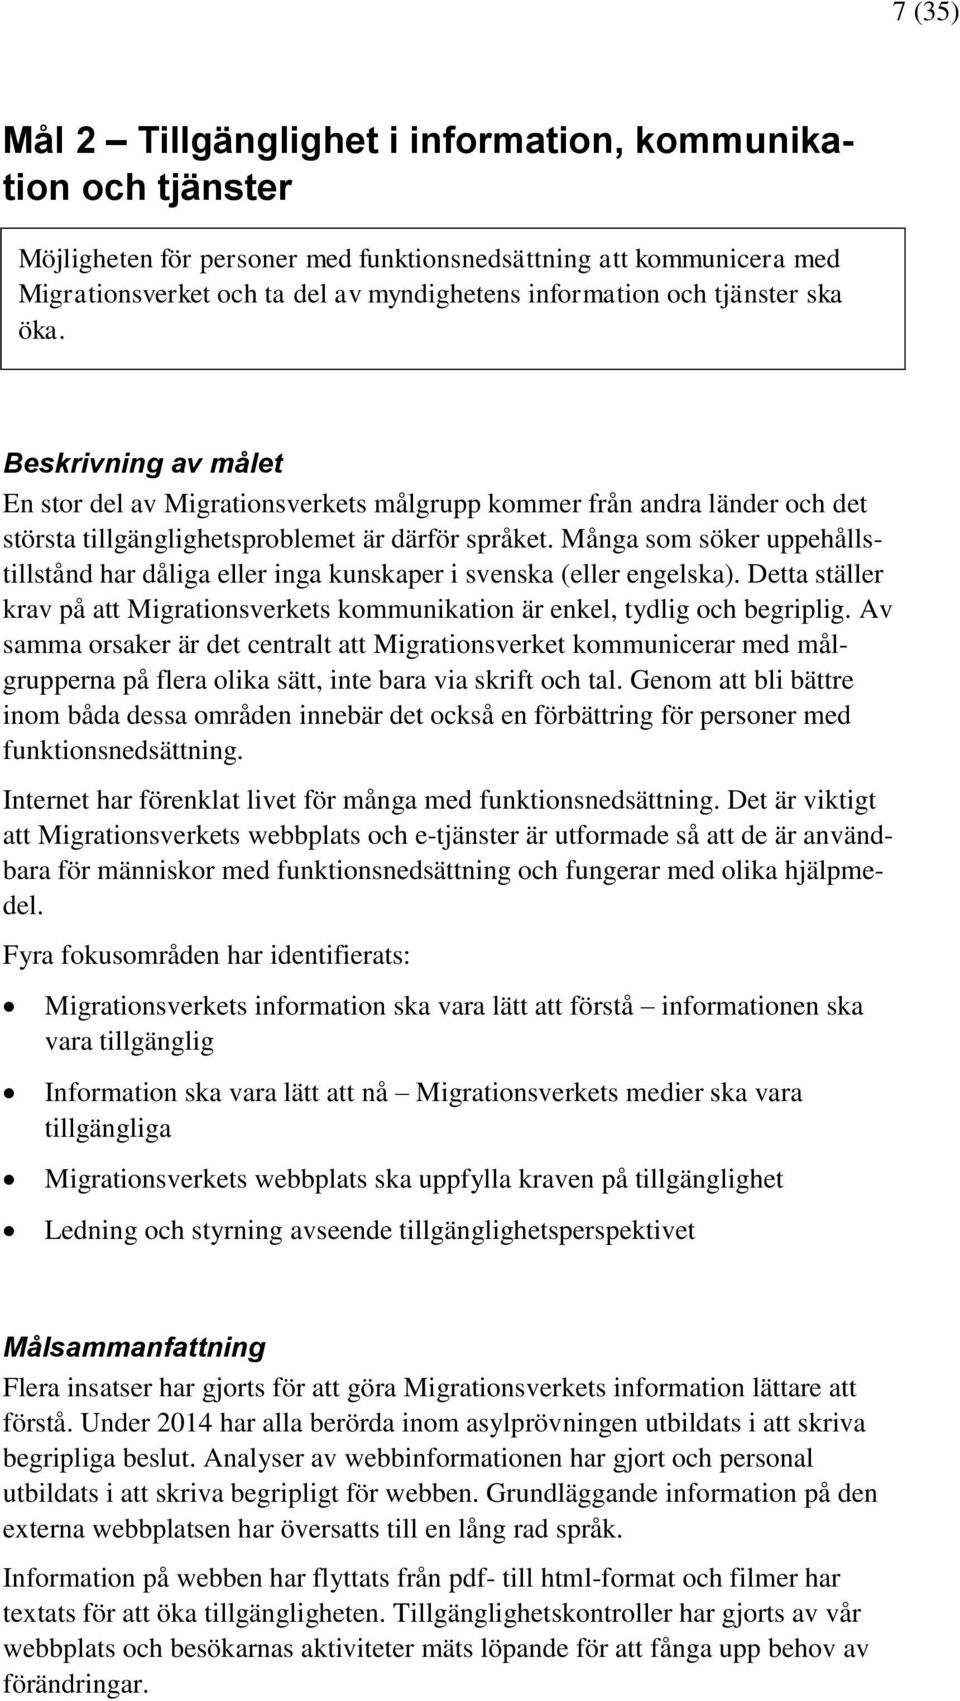 Många som söker uppehållstillstånd har dåliga eller inga kunskaper i svenska (eller engelska). Detta ställer krav på att Migrationsverkets kommunikation är enkel, tydlig och begriplig.